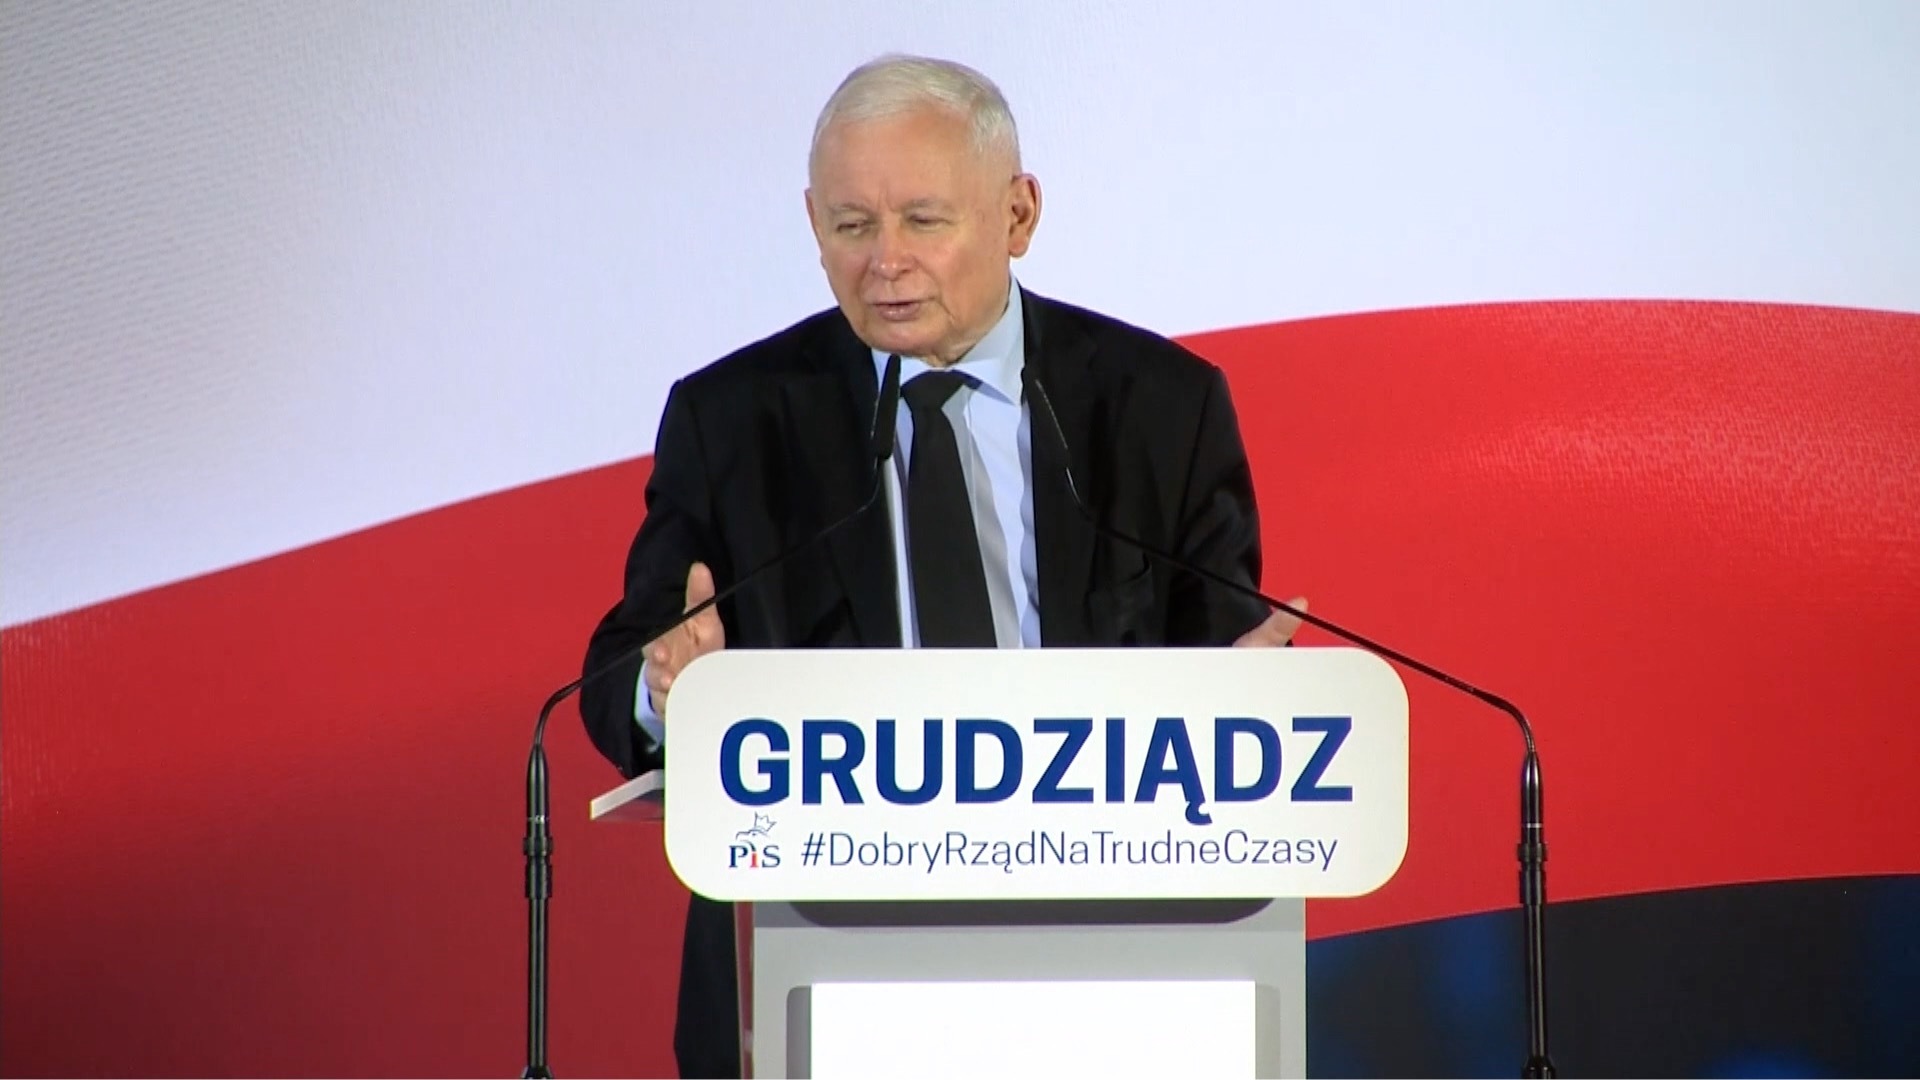 27.06.22 | W taki sposób prezes Kaczyński mówił o osobach LGBTQ+